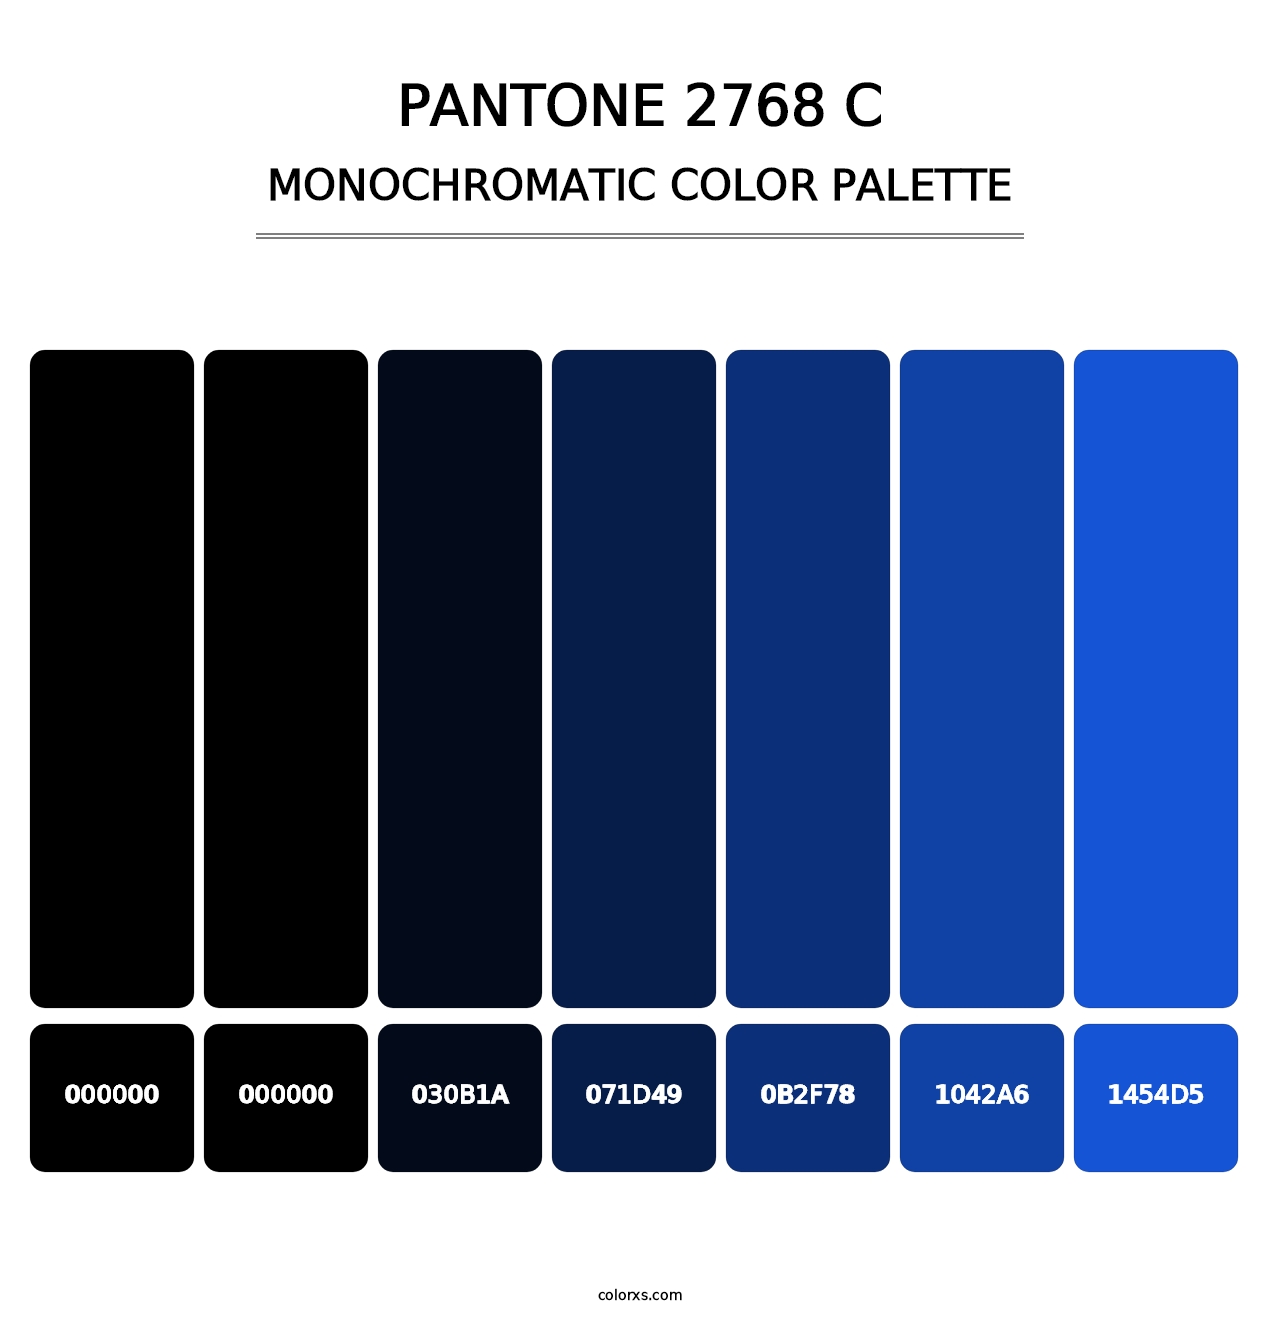 PANTONE 2768 C - Monochromatic Color Palette